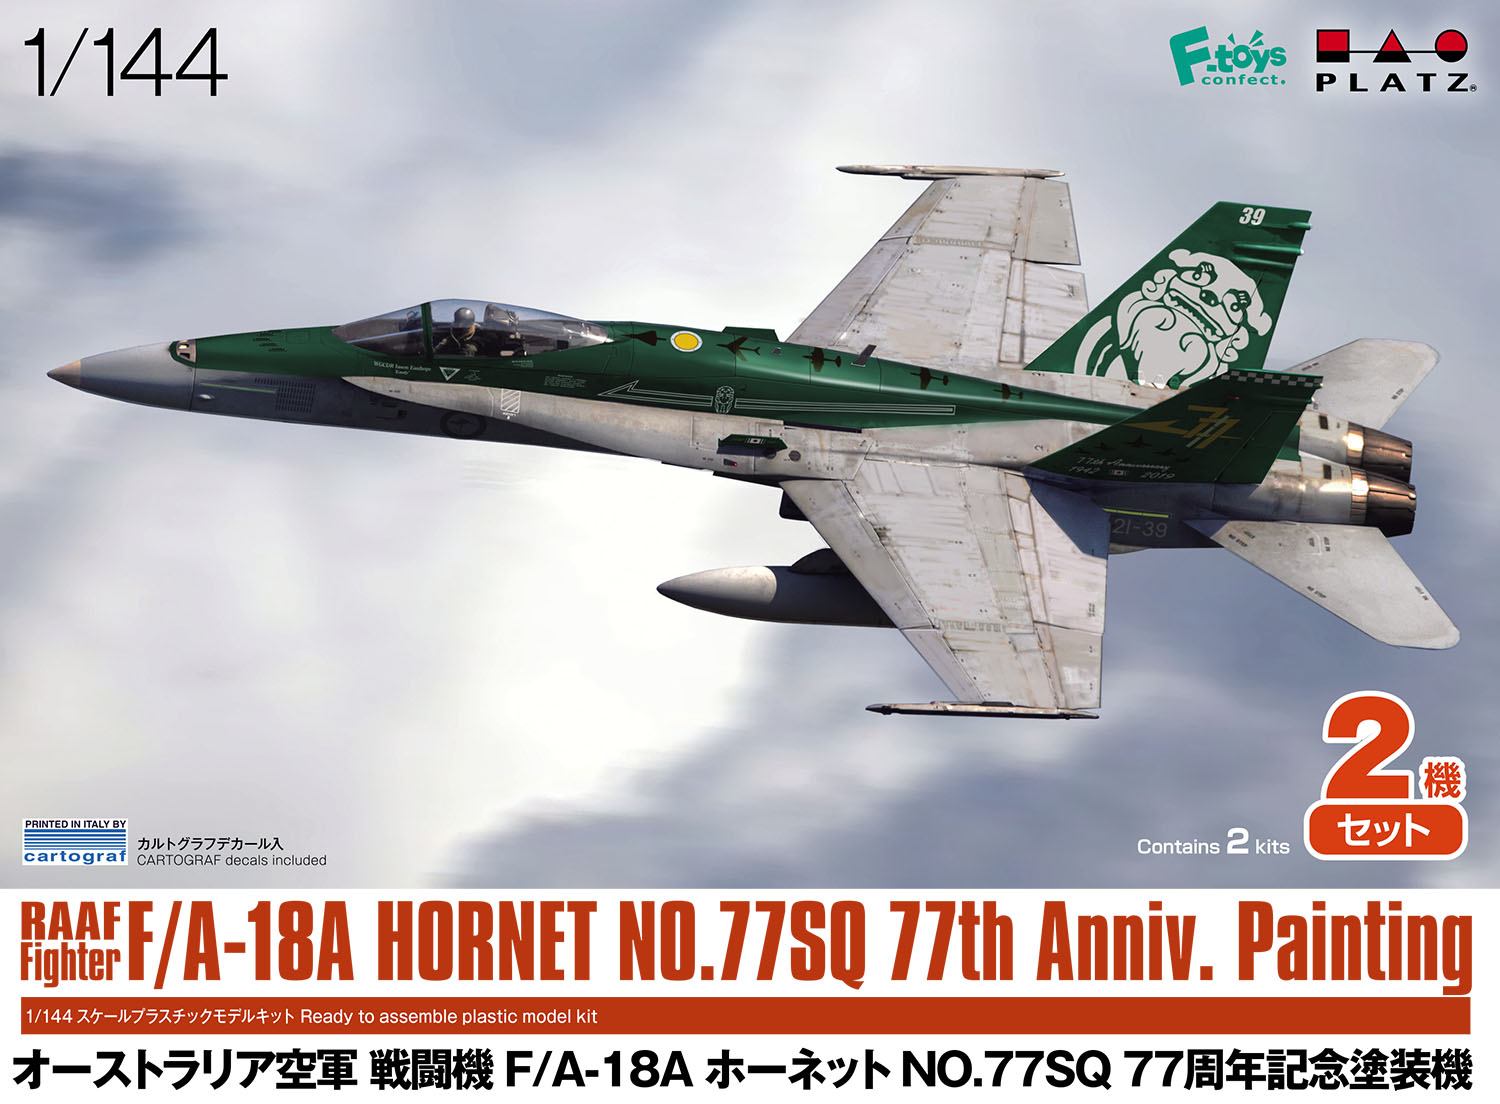 プラッツ PF-54 1/144 オーストラリア空軍 戦闘機 F/A-18A ホーネット NO.77 SQ 77周年記念塗装機 (2機セット) |  ホビーショップタムタム 通販 プラモデル